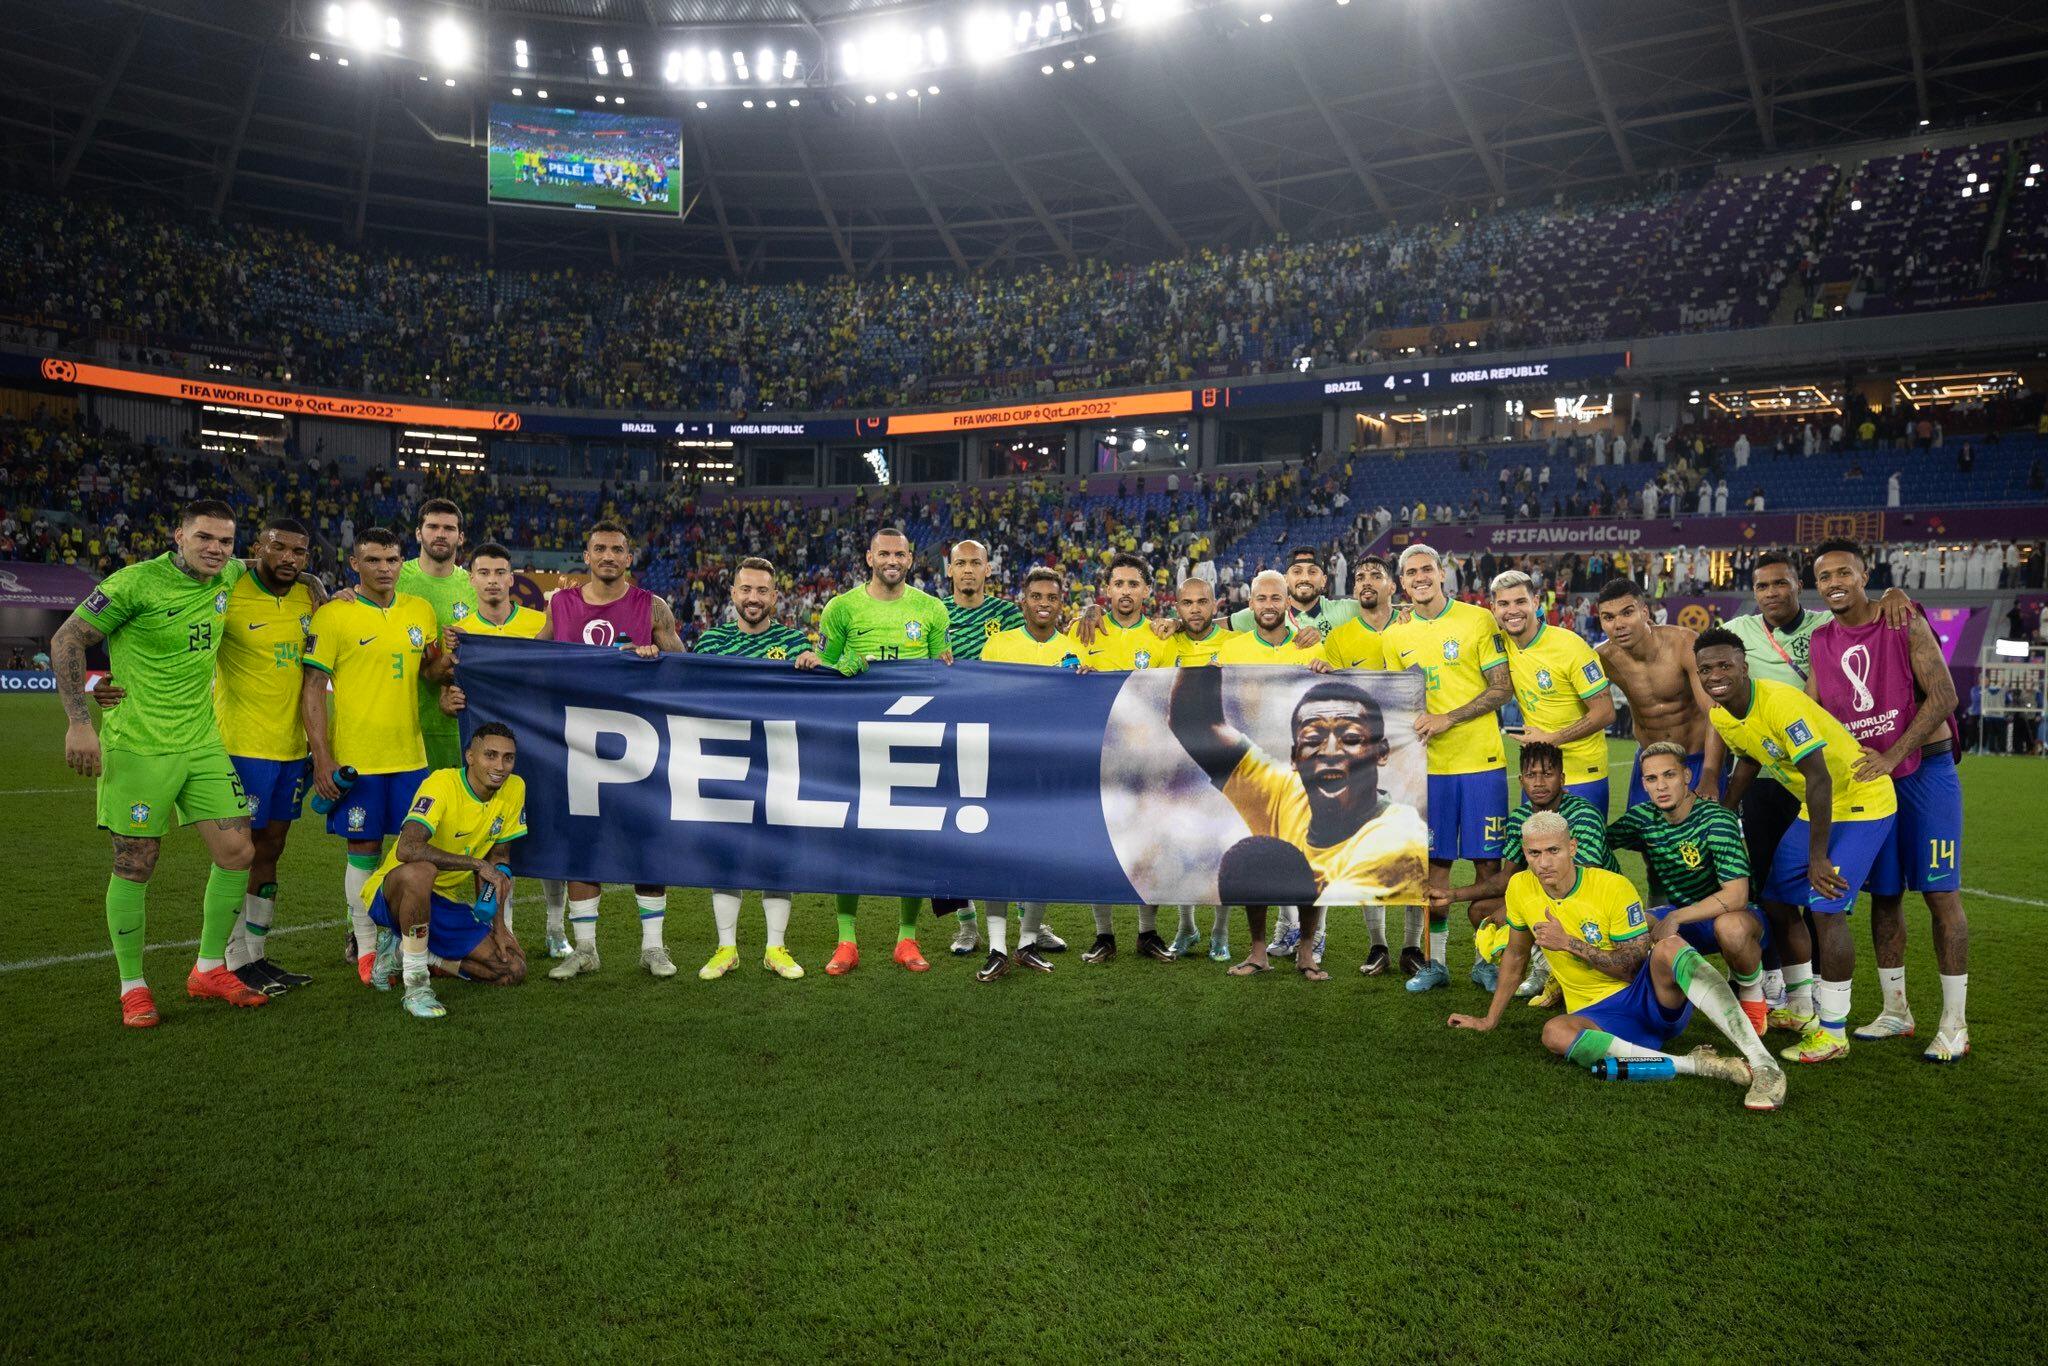 Pelé agradece homenagem de jogadores: ‘Fizeram muito feliz o meu dia’